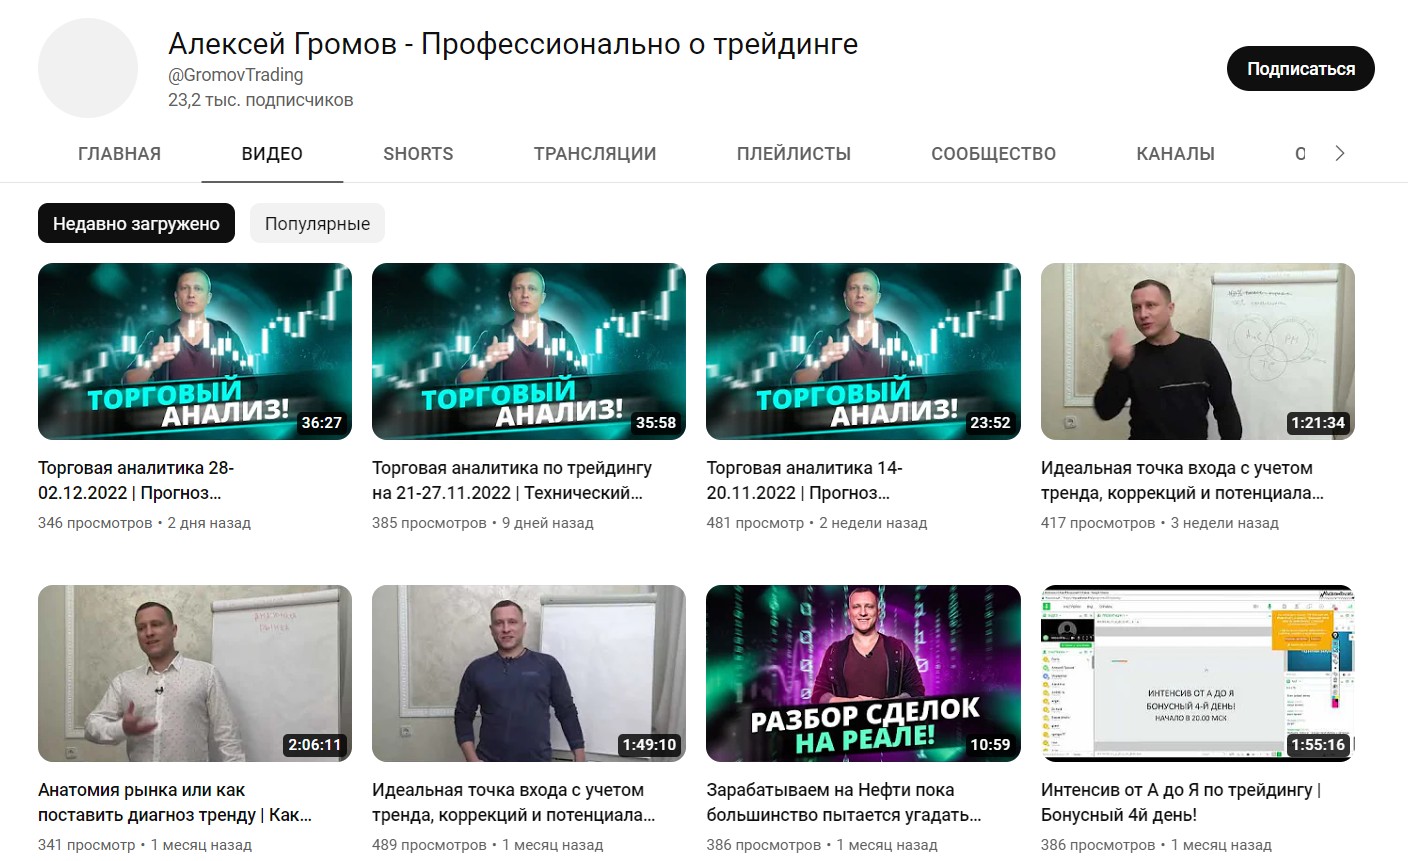 Канал YouTube Алексей Громов – Профессионально о трейдинге